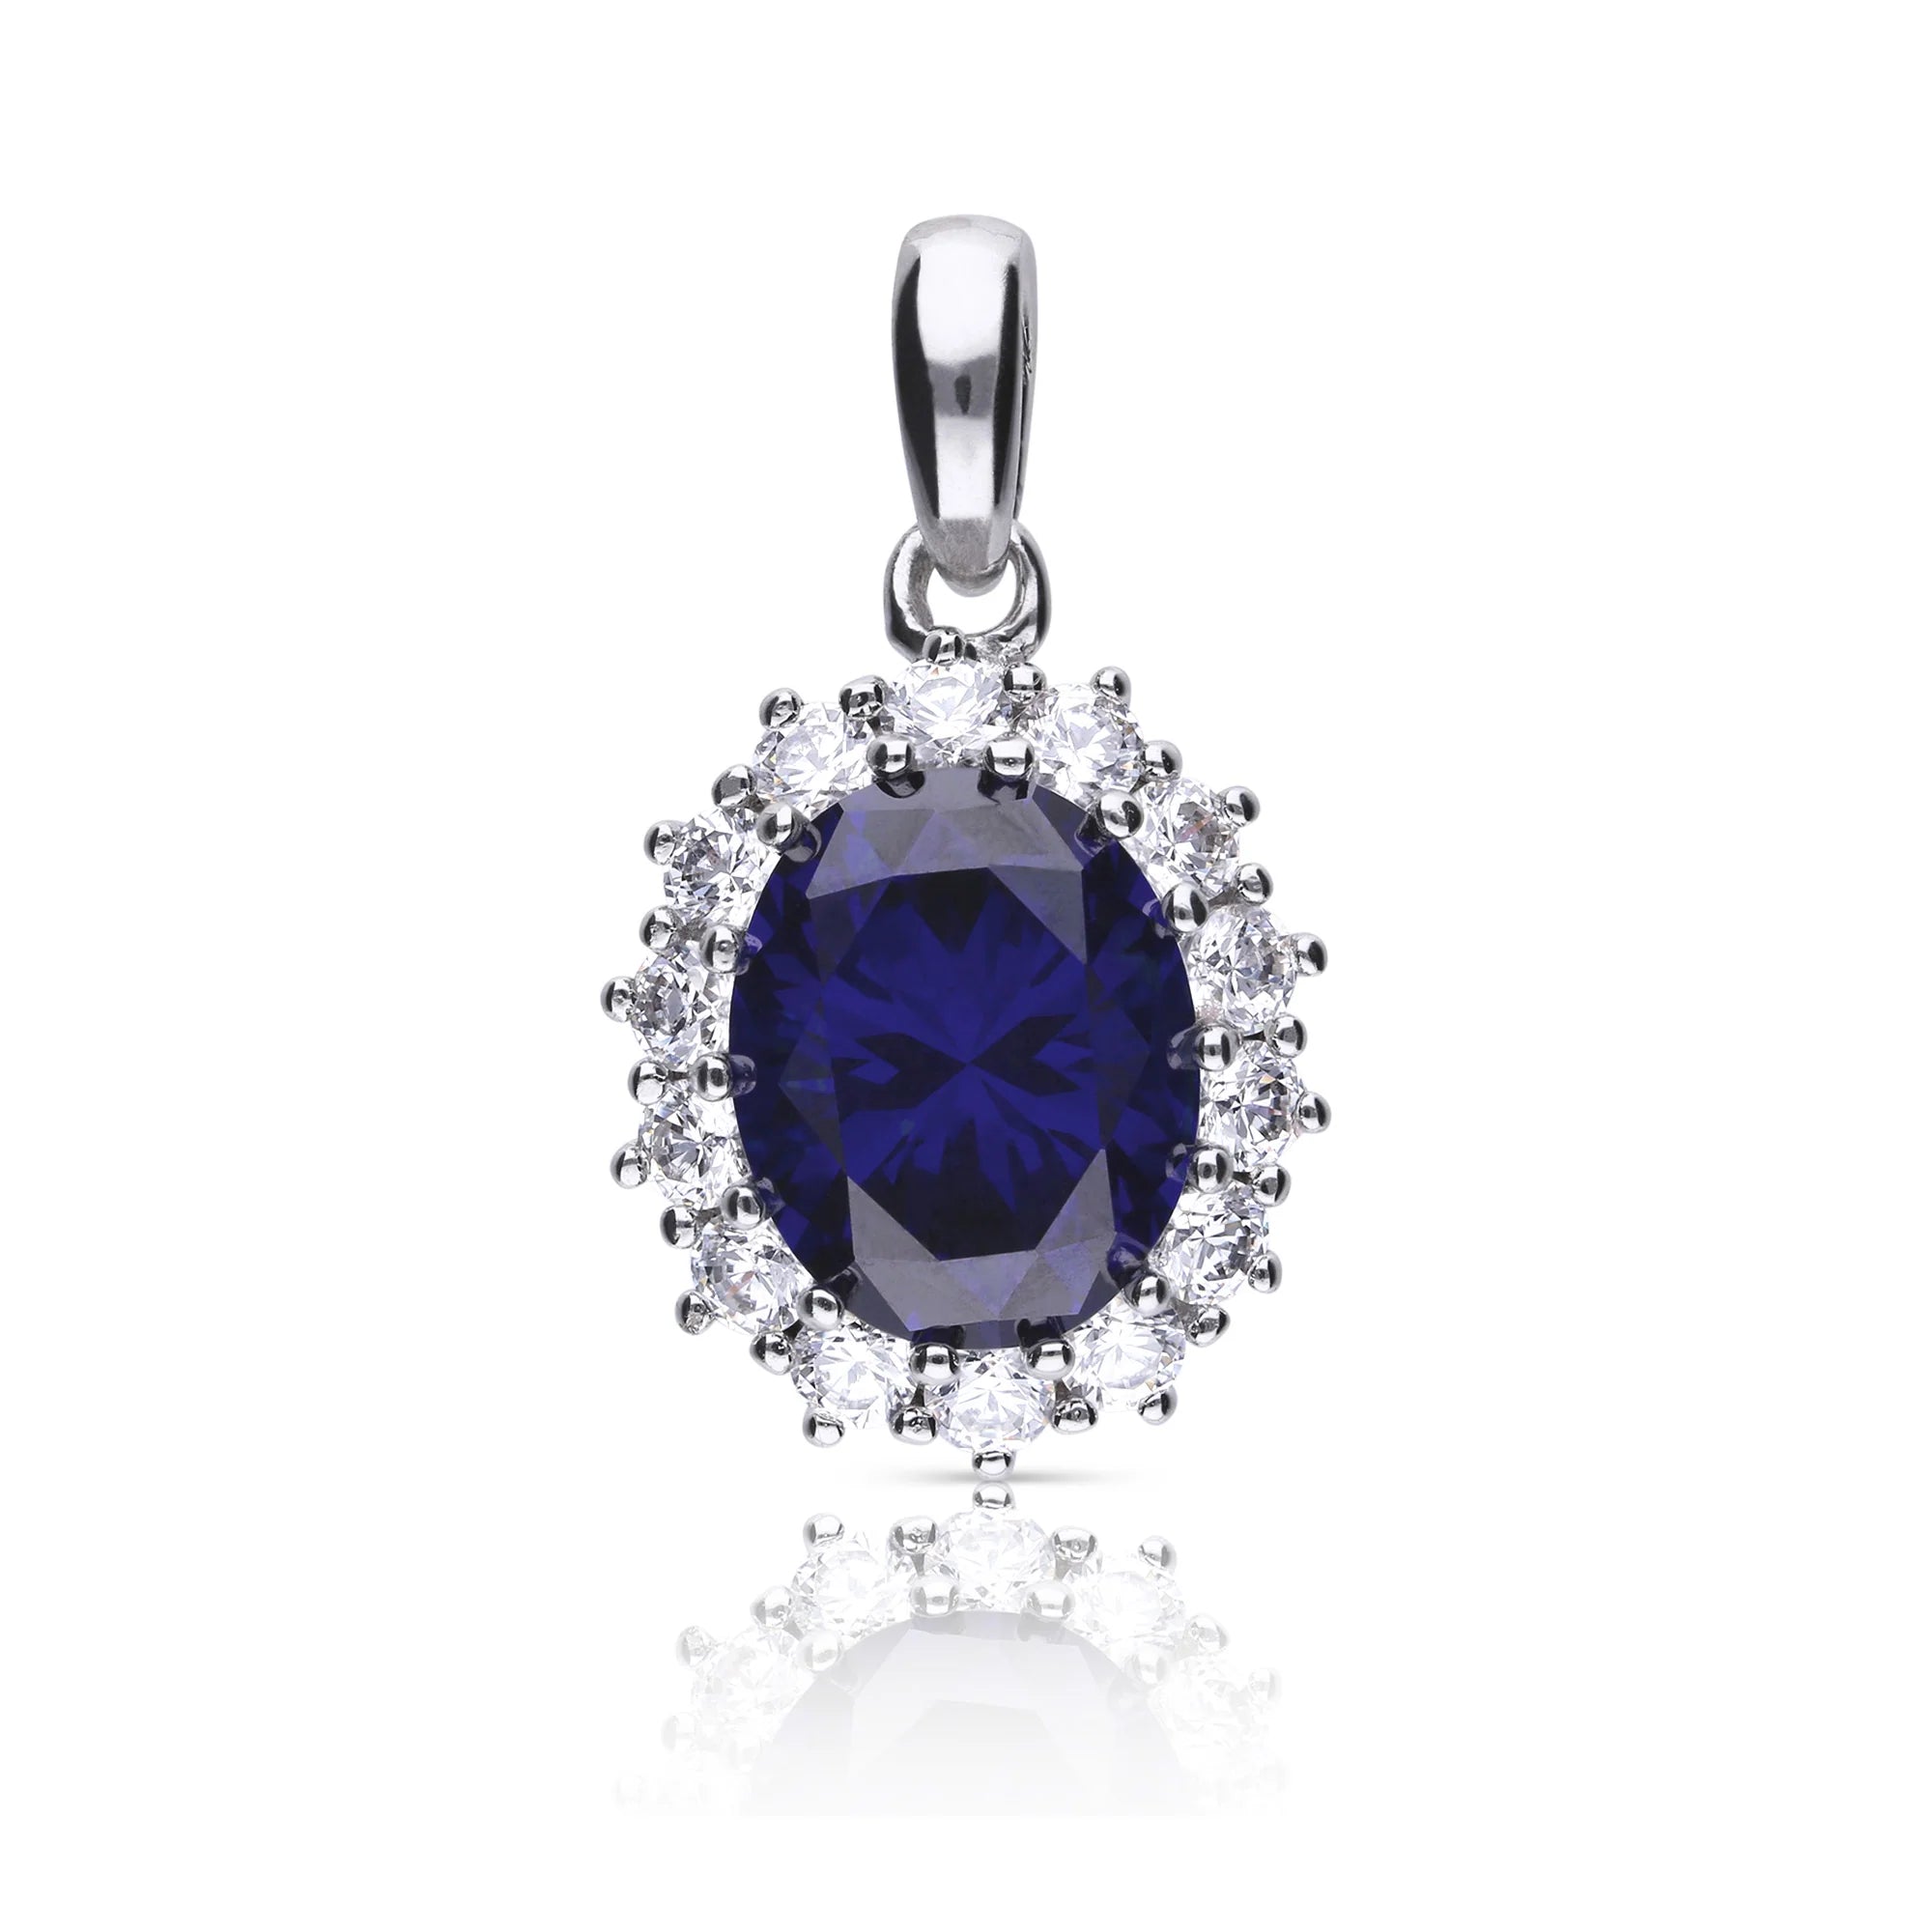 Produktfotografie des Collier-Anhängers von Diamonfire mit einem großen blauen Stein und einem Diamantbesatz um den zentralen blauen Stein